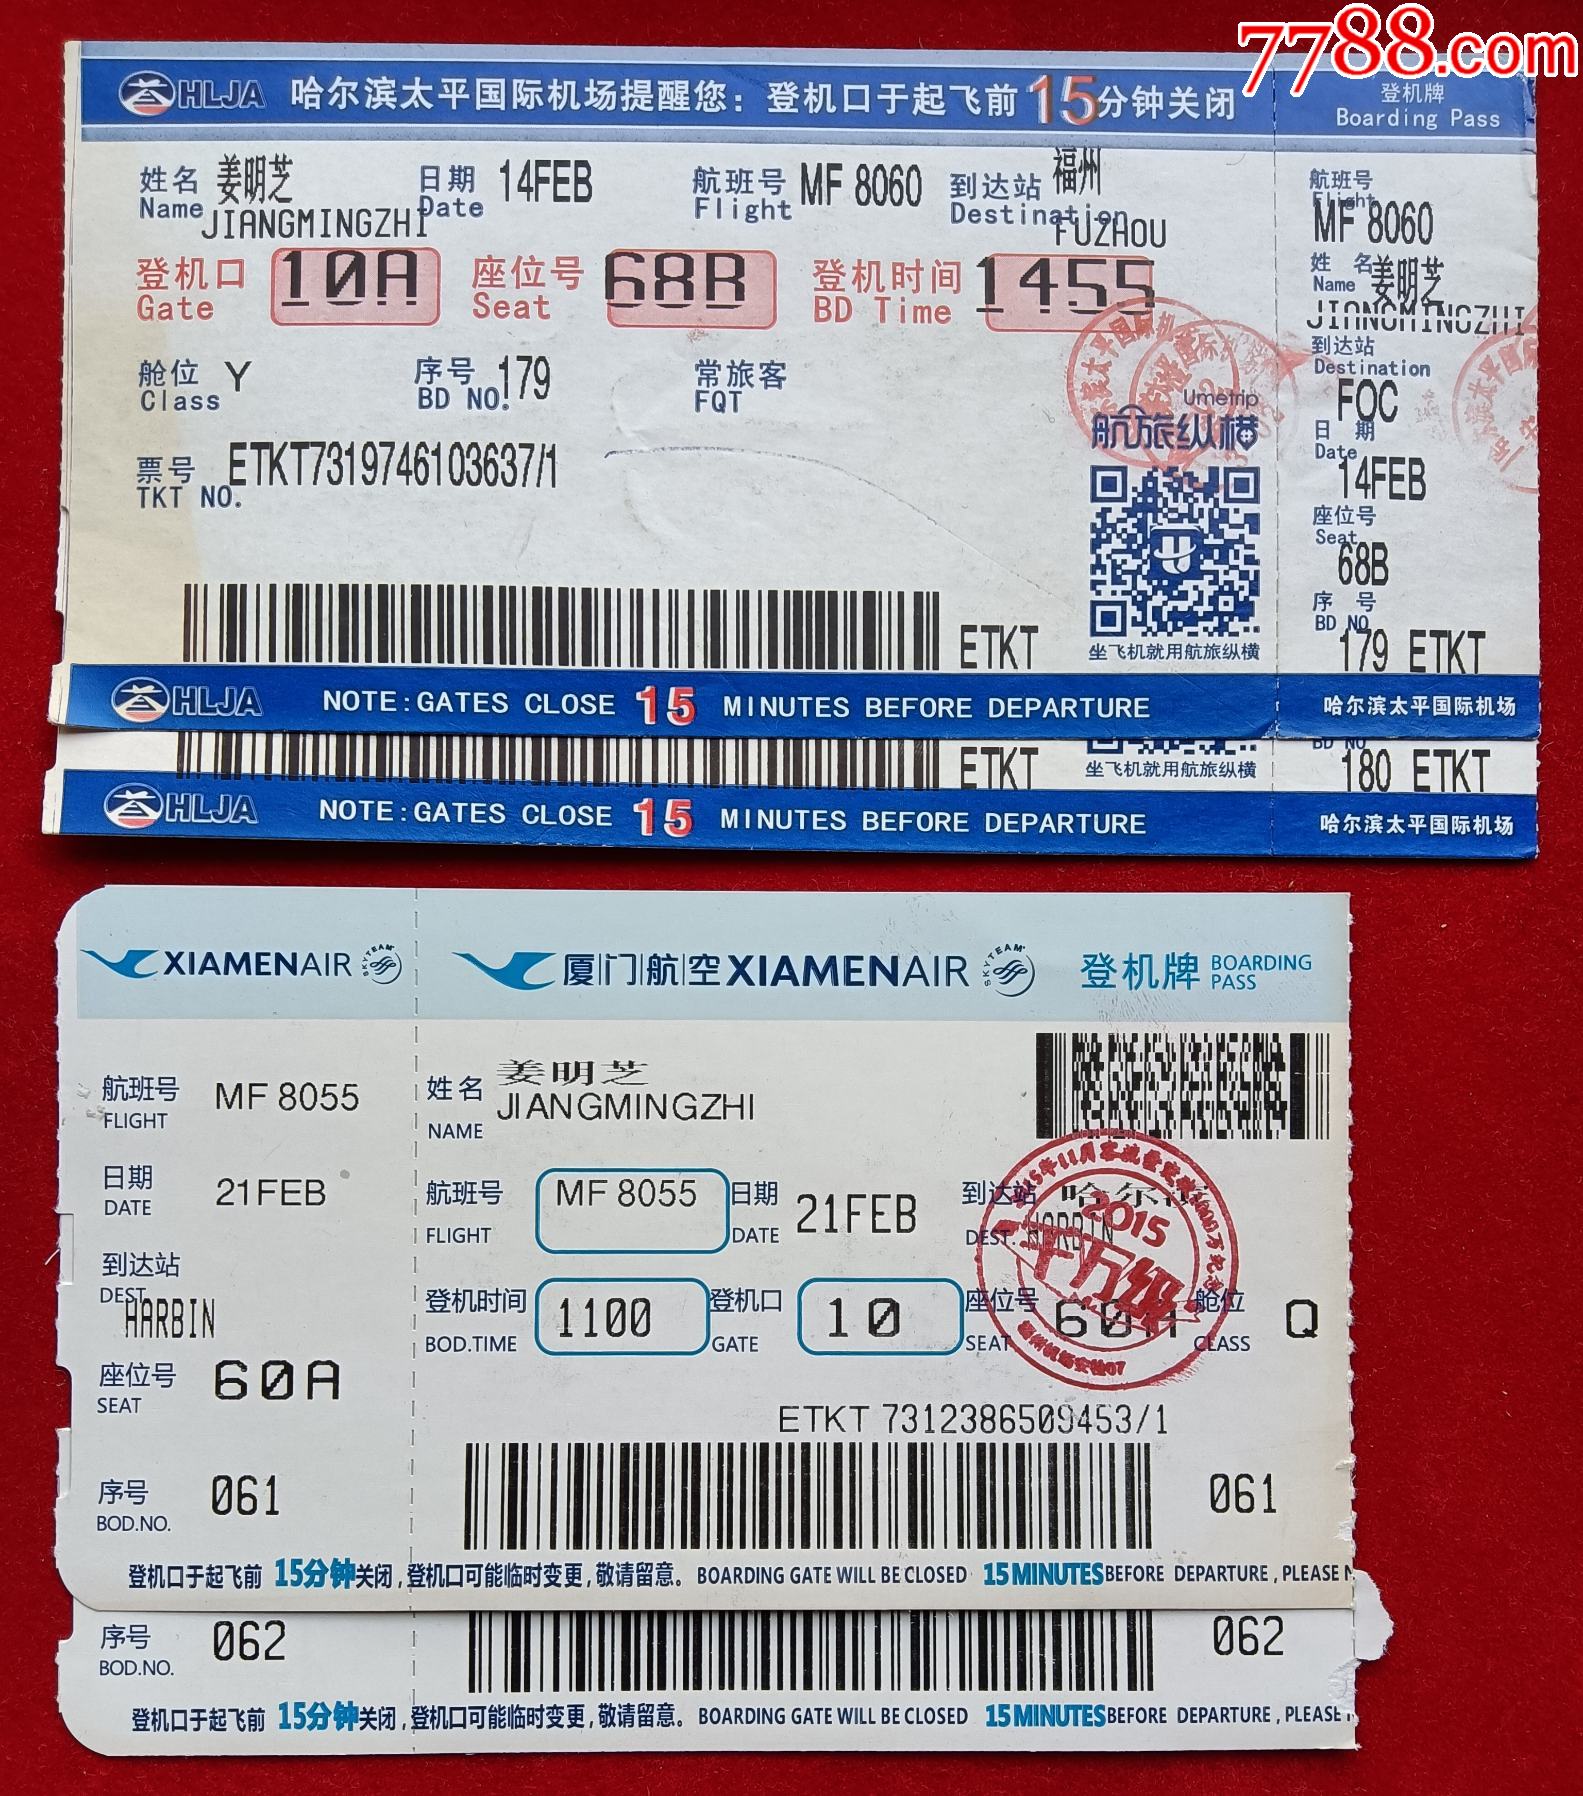 机票4枚:哈尔滨太平国际机场mf8060福州,厦门mf8055哈尔滨,都是两连号